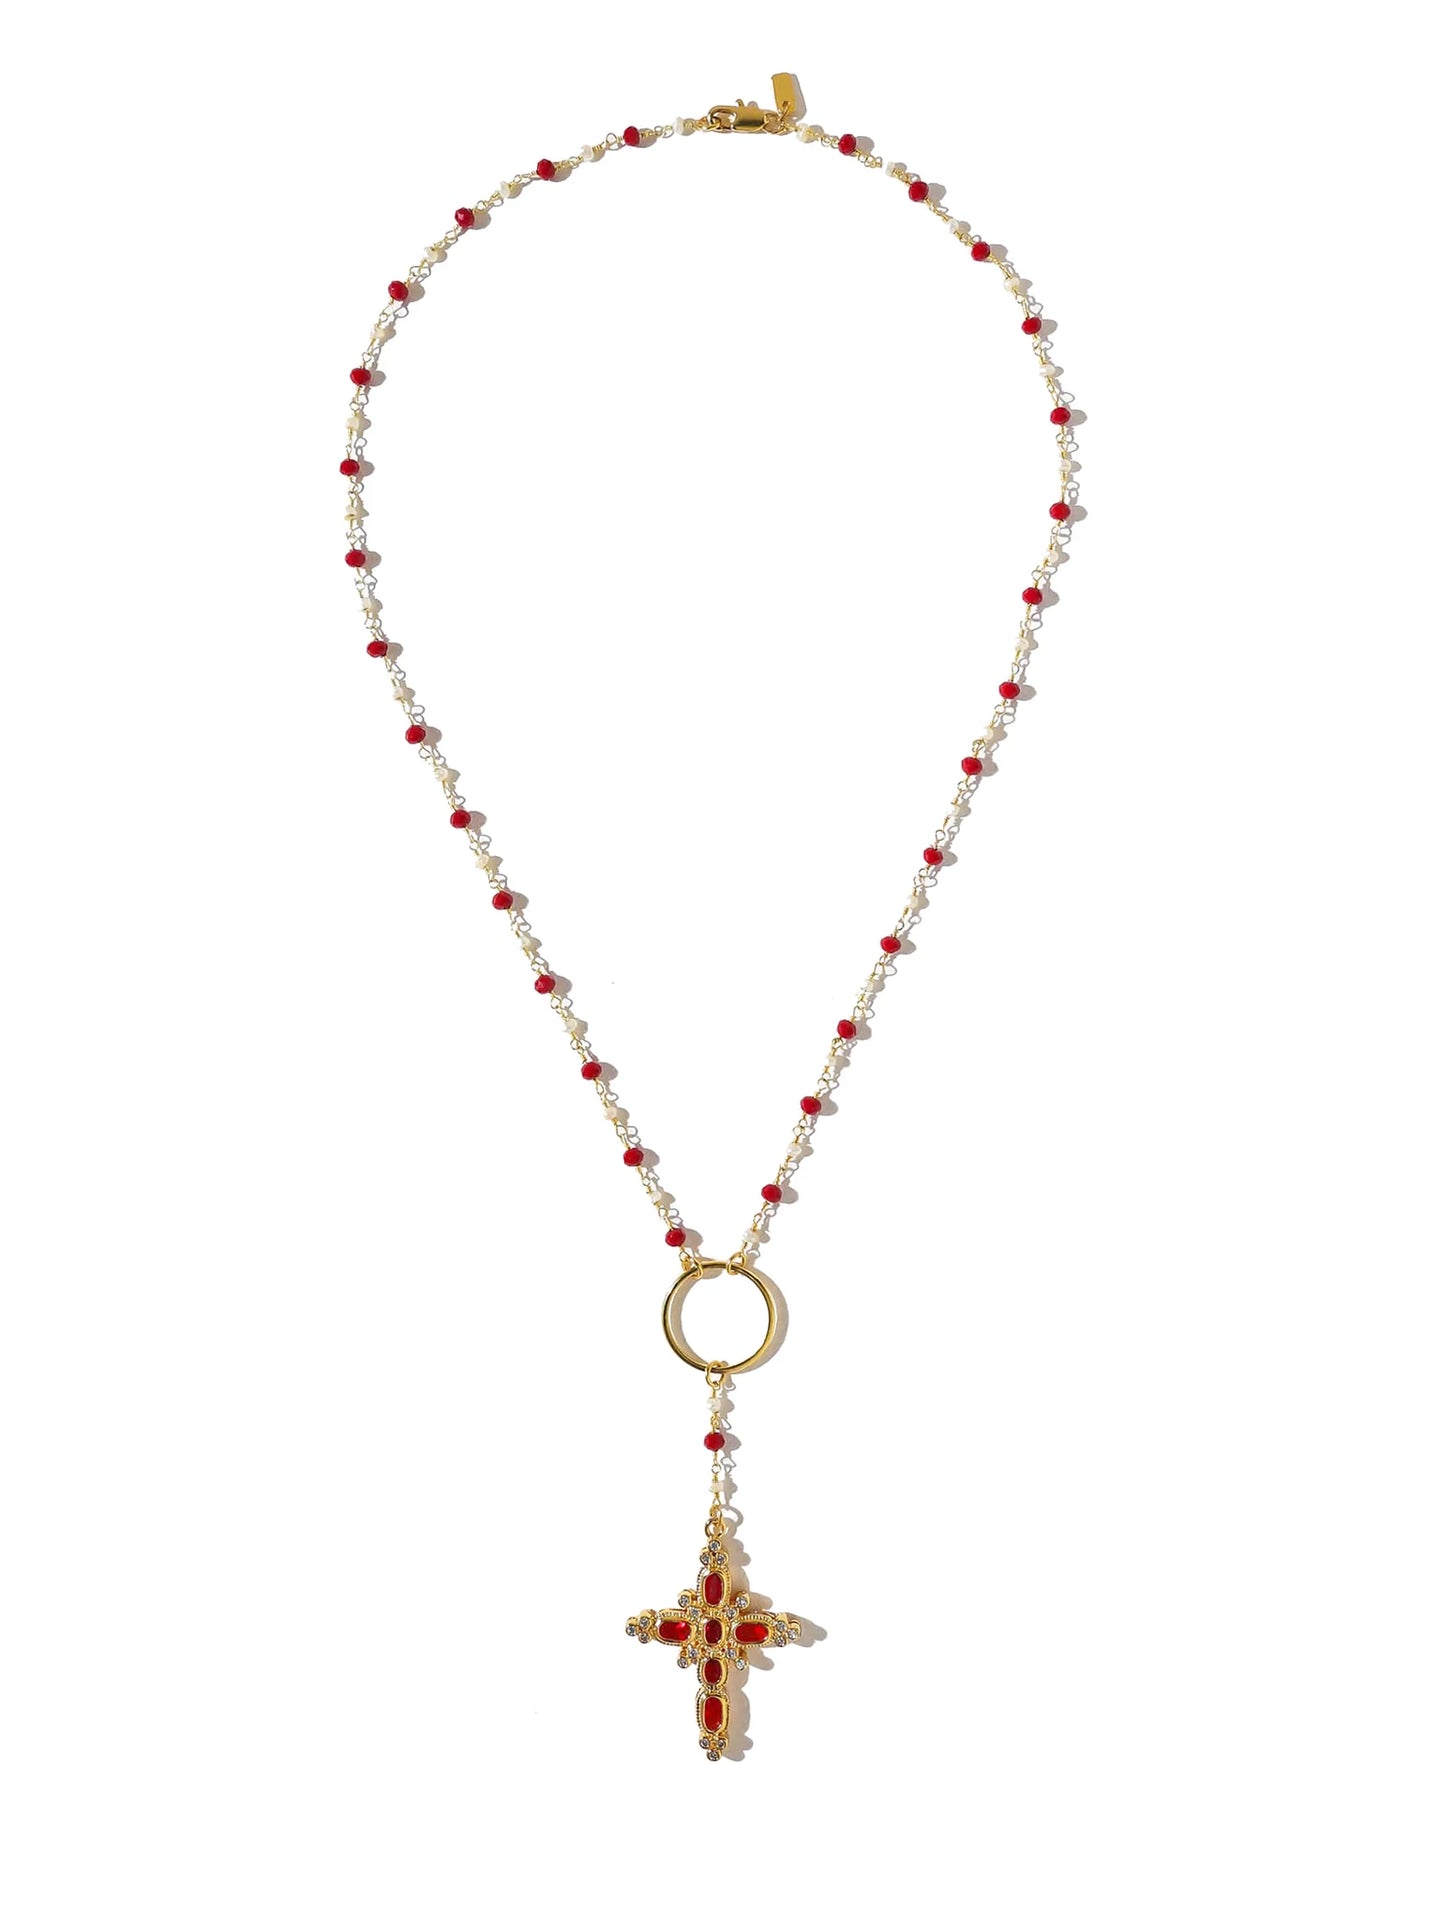 The Aalia Ruby Rosary